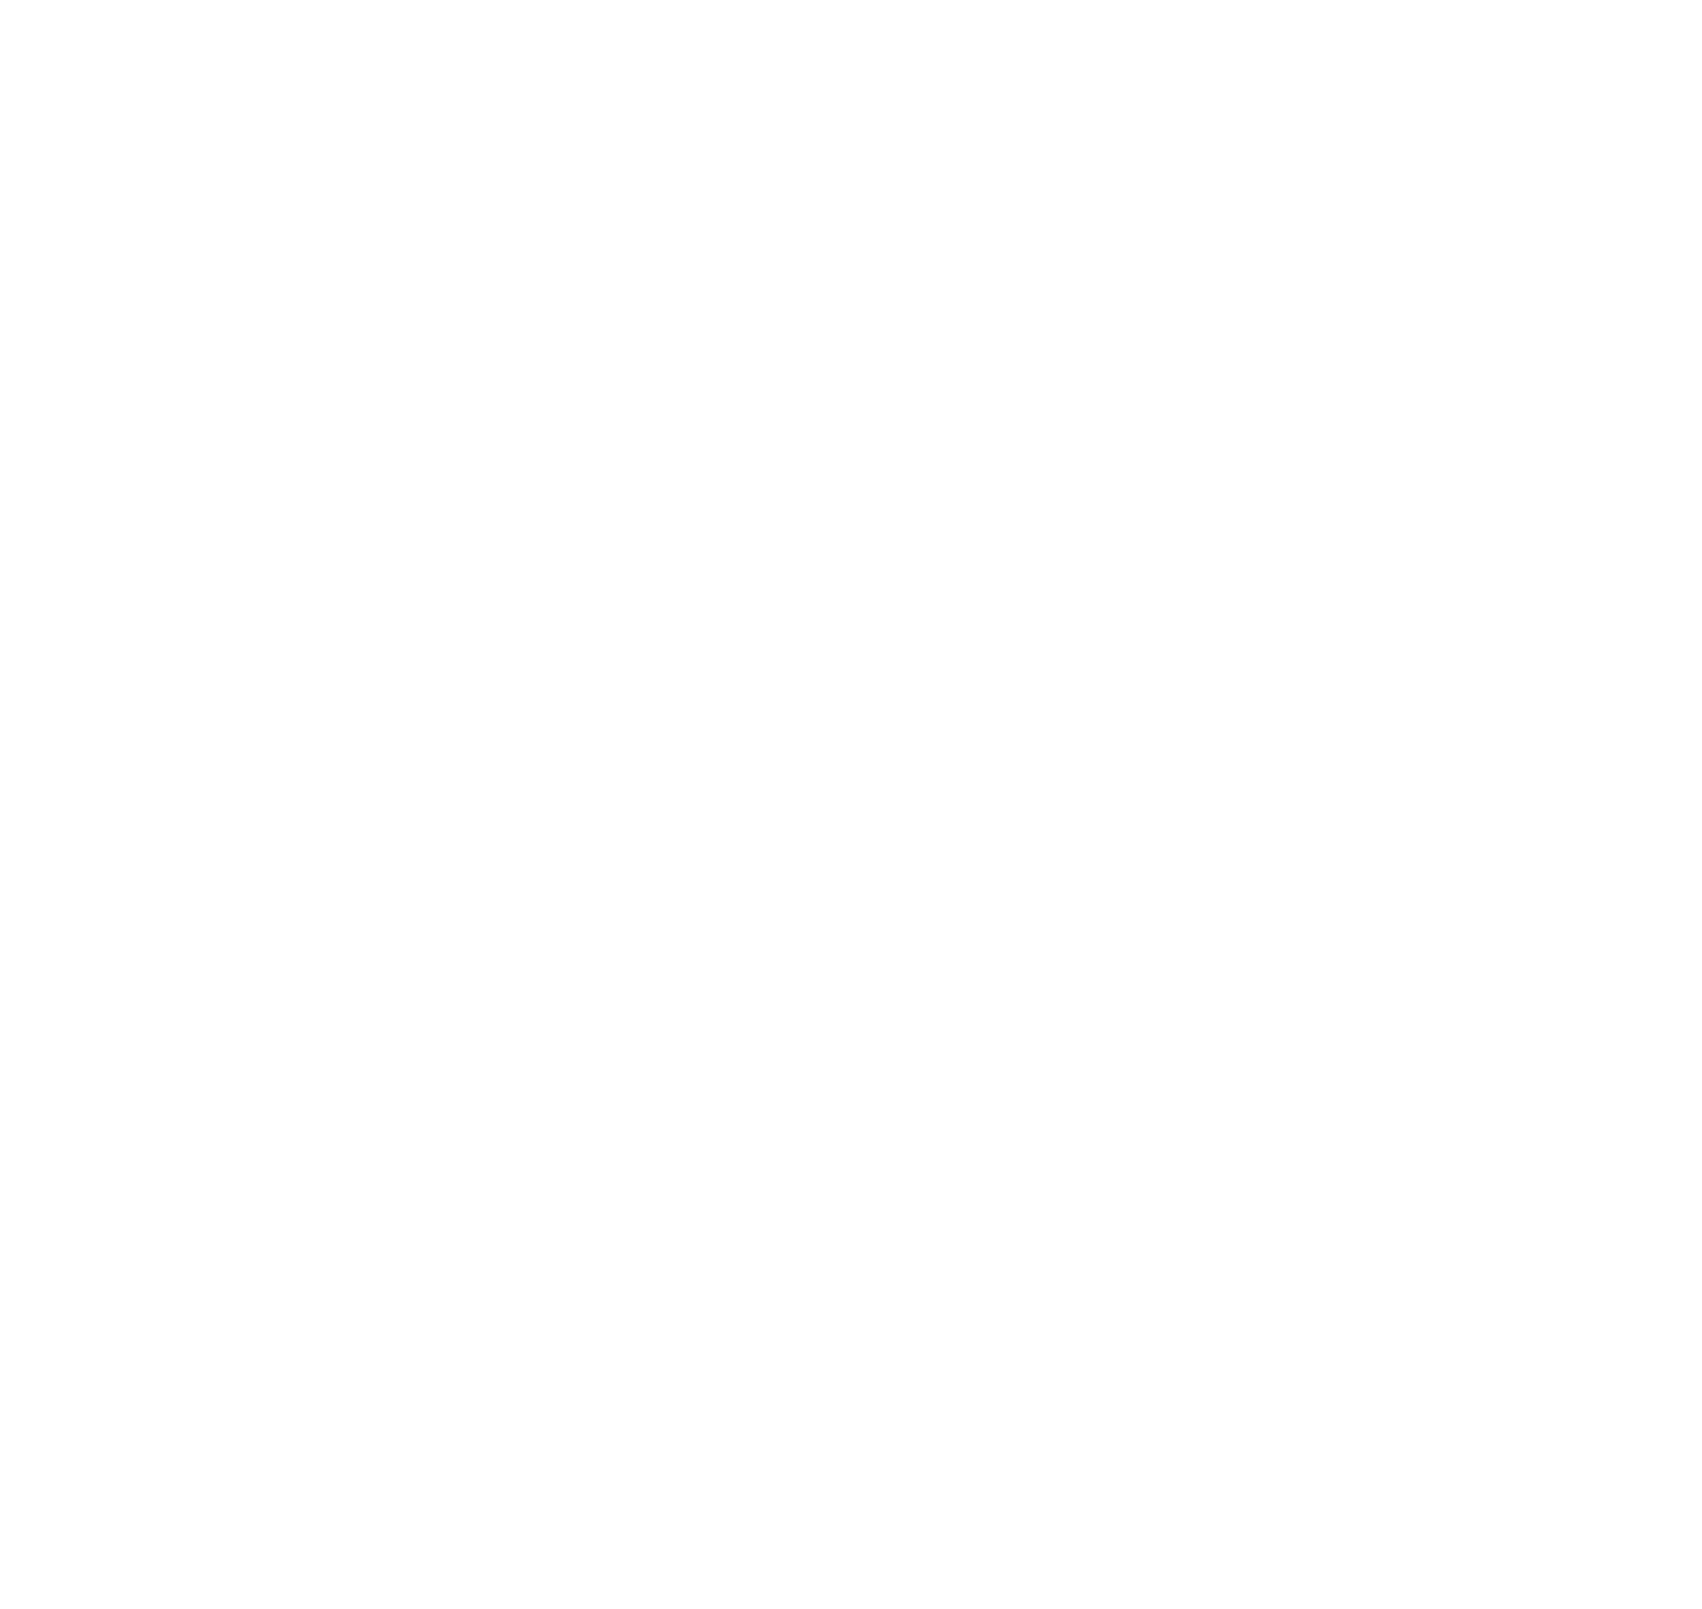 logo zonta electra wue